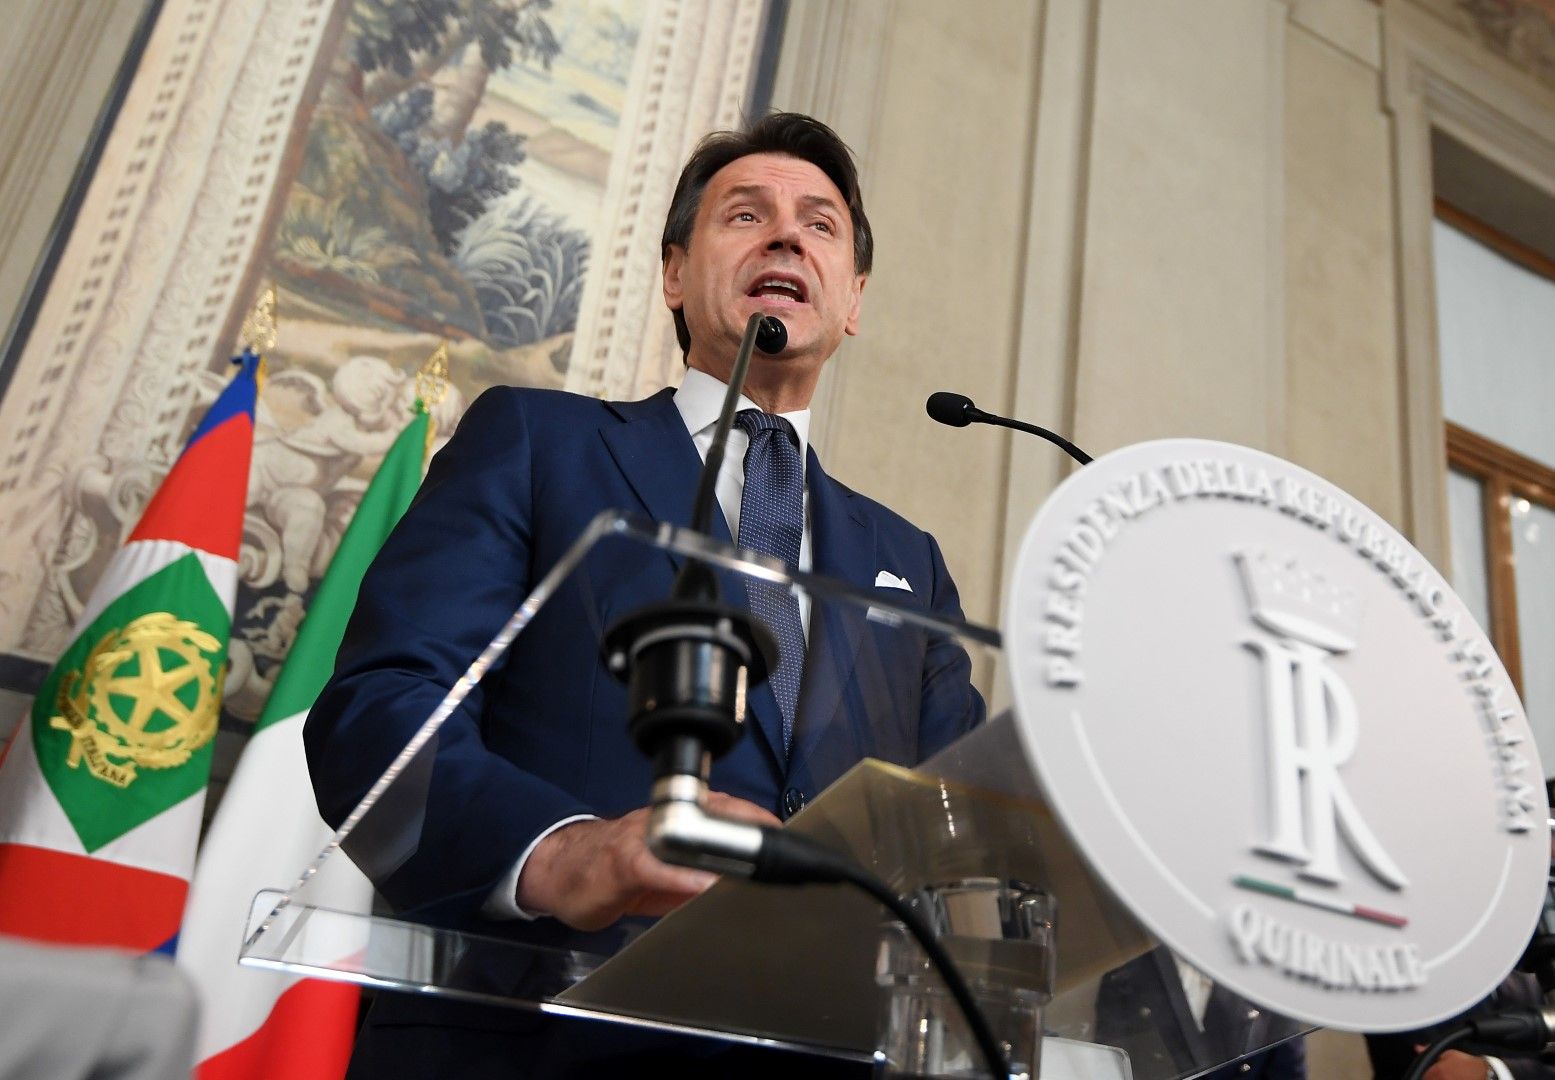 Конте иска гаранции за работните места в Италия след сделката Фиат Крайслер - Пежо